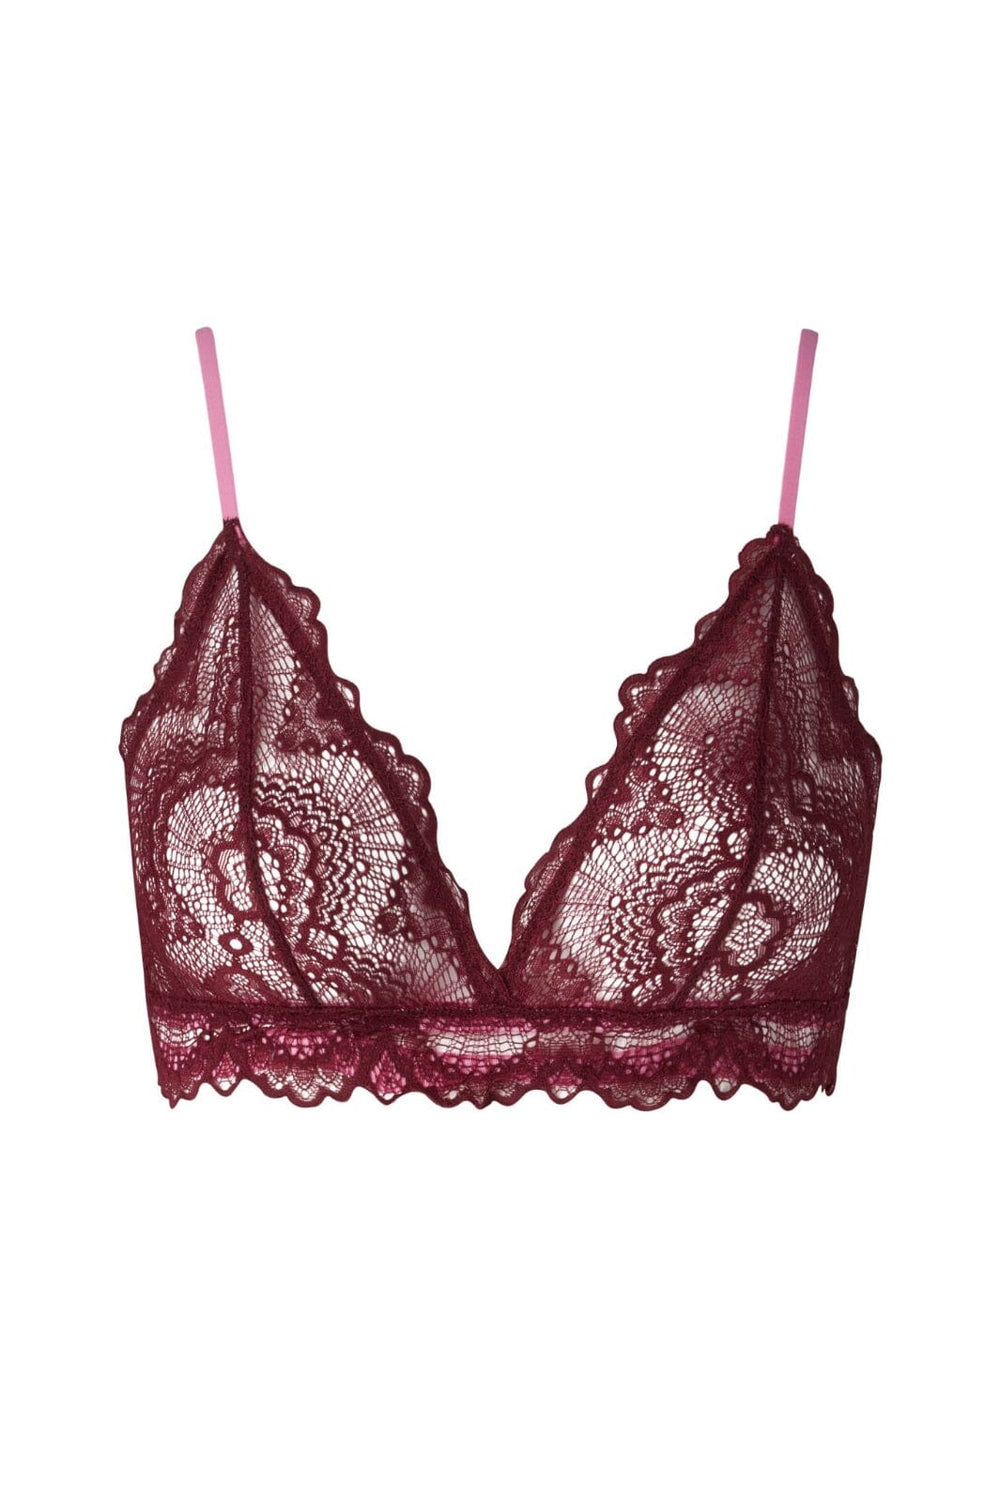 Understatement Underwear - Lace Triangle Bralette - Burgundy / Candy Pink BH 